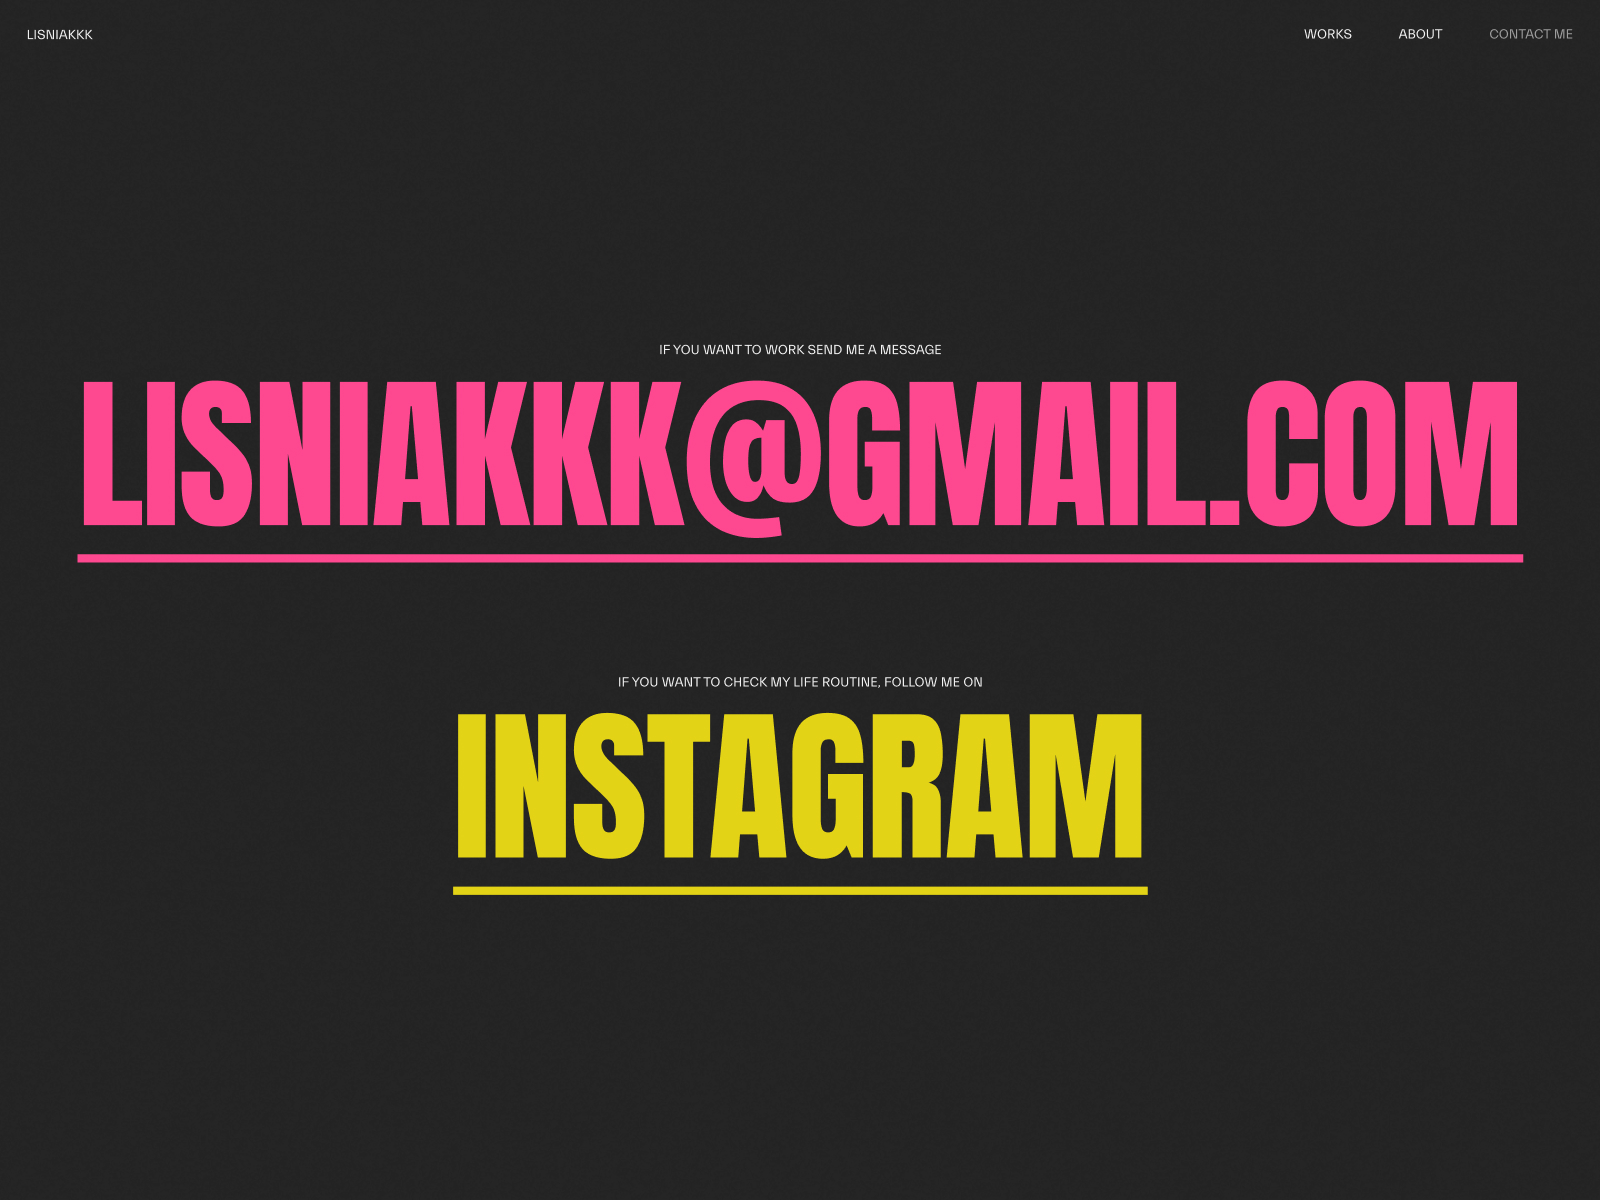 Lisniakkk — Contact me